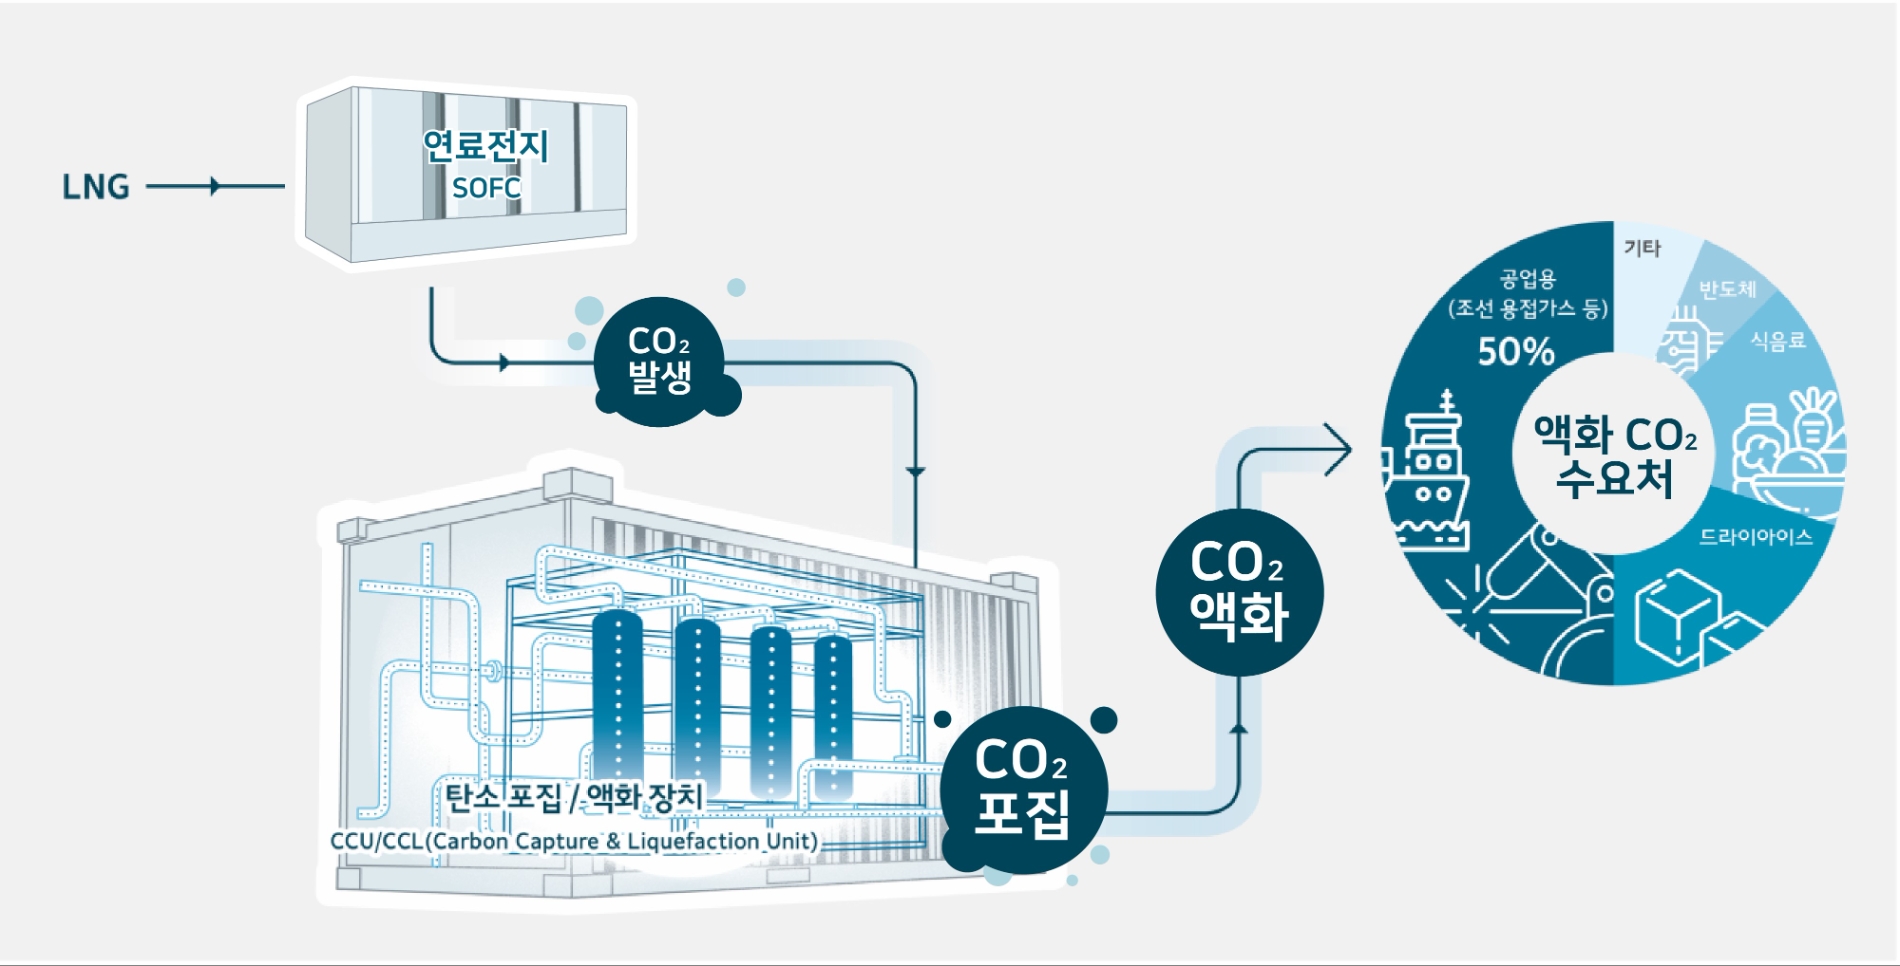 연료전지(SOFC) 연계 탄소 포집·액화·활용 실증사업 개념도 / 사진제공=SK에코플랜트